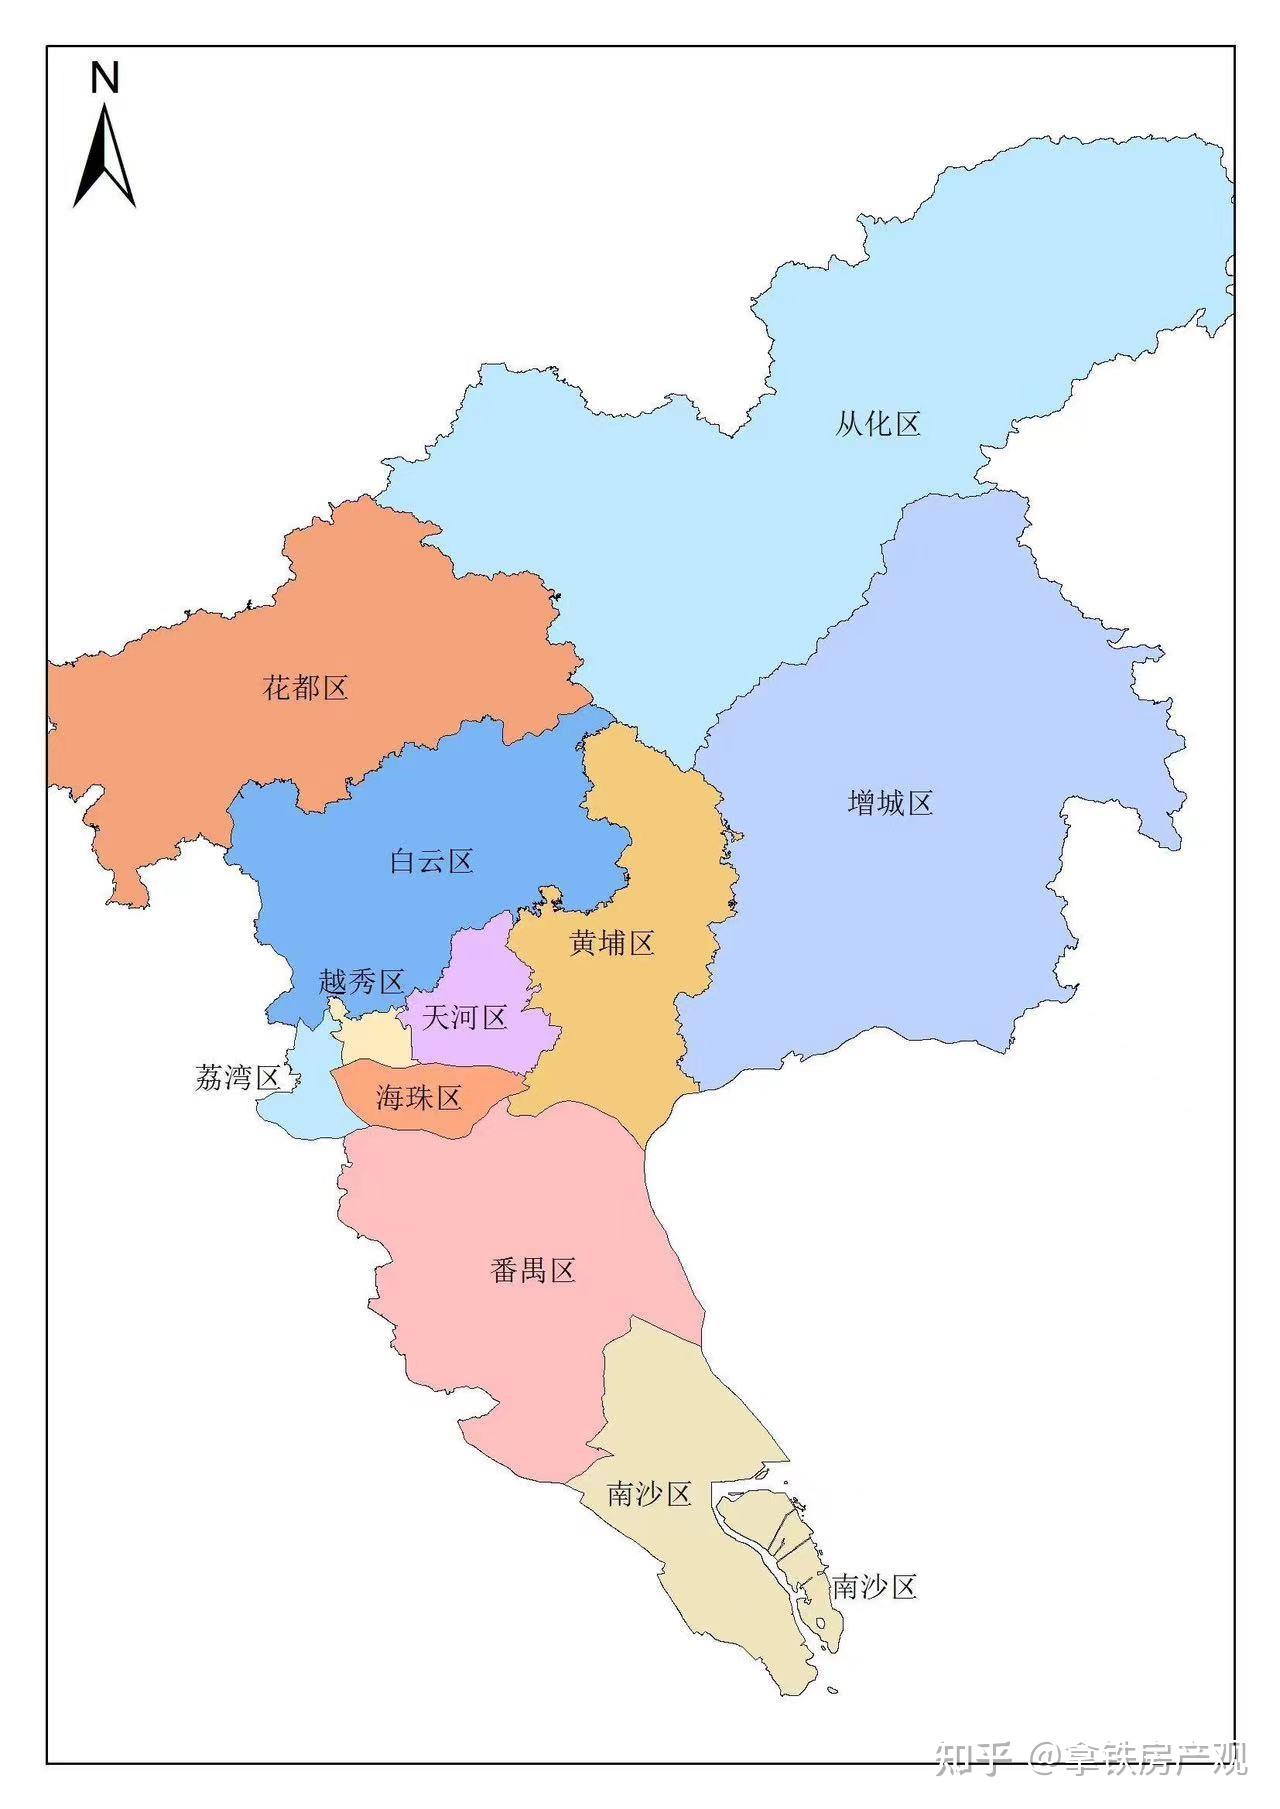 920广州放开限购,对各个区的影响有多大?